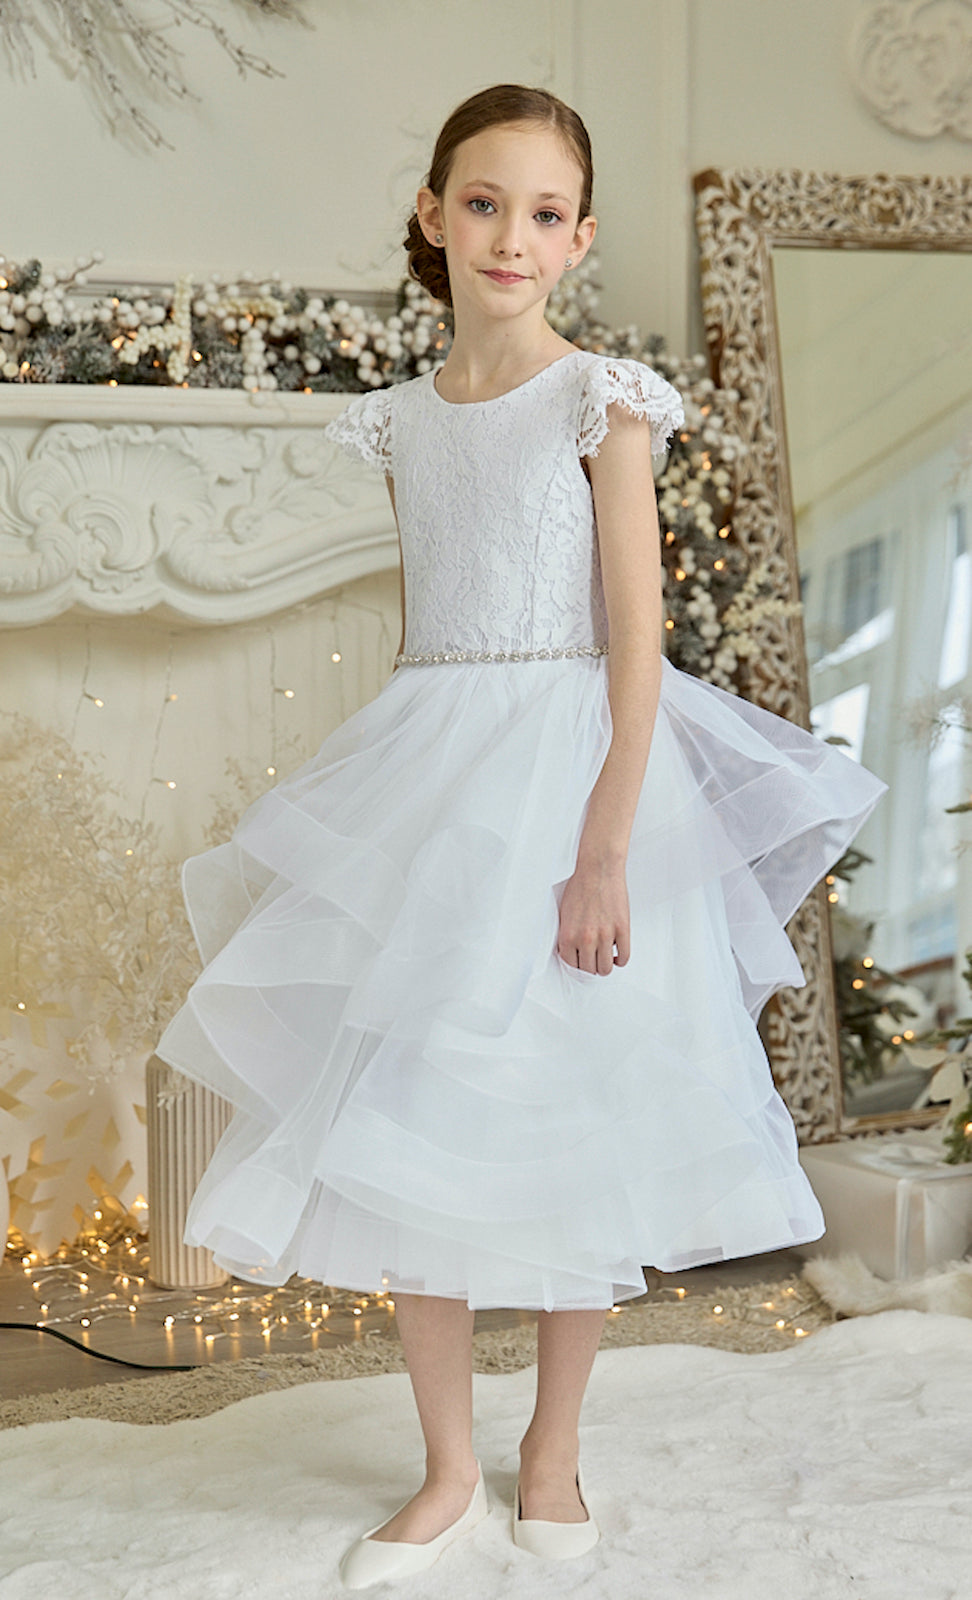 Teter Warm White Tea Length Lace Communion Dress (Size 12)